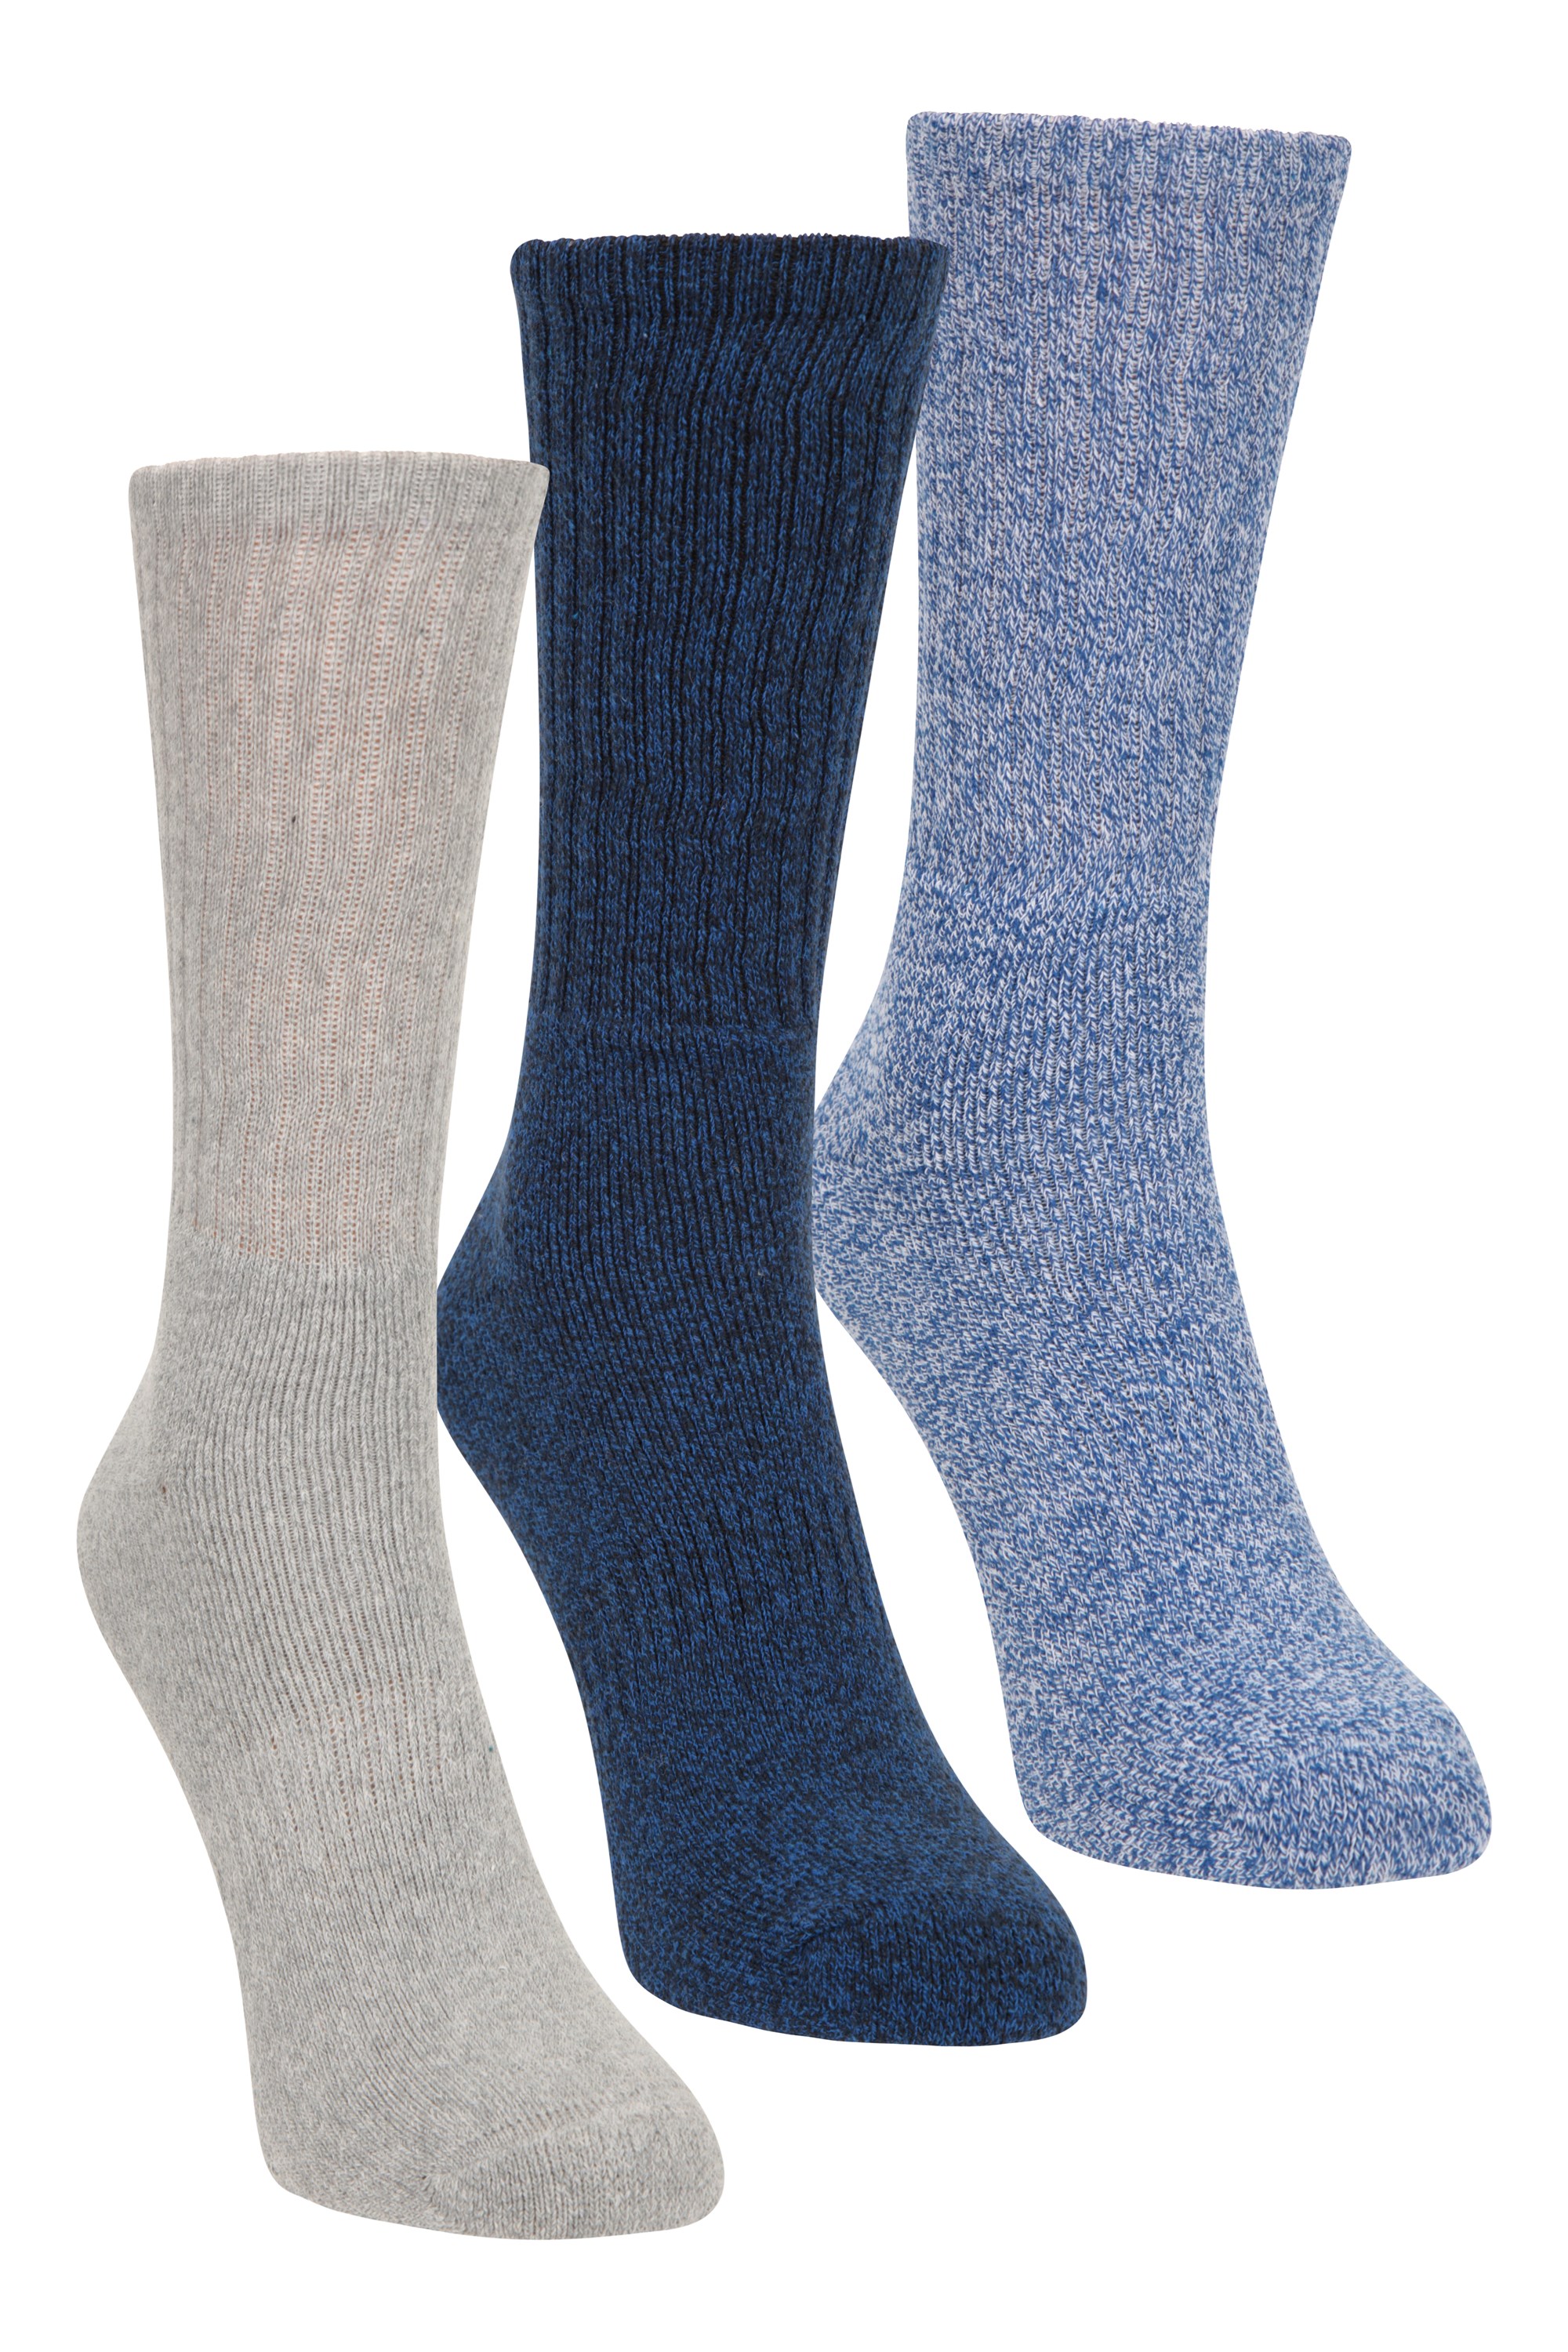 Outdoor Mens Walking Socks 3-pack - Blue